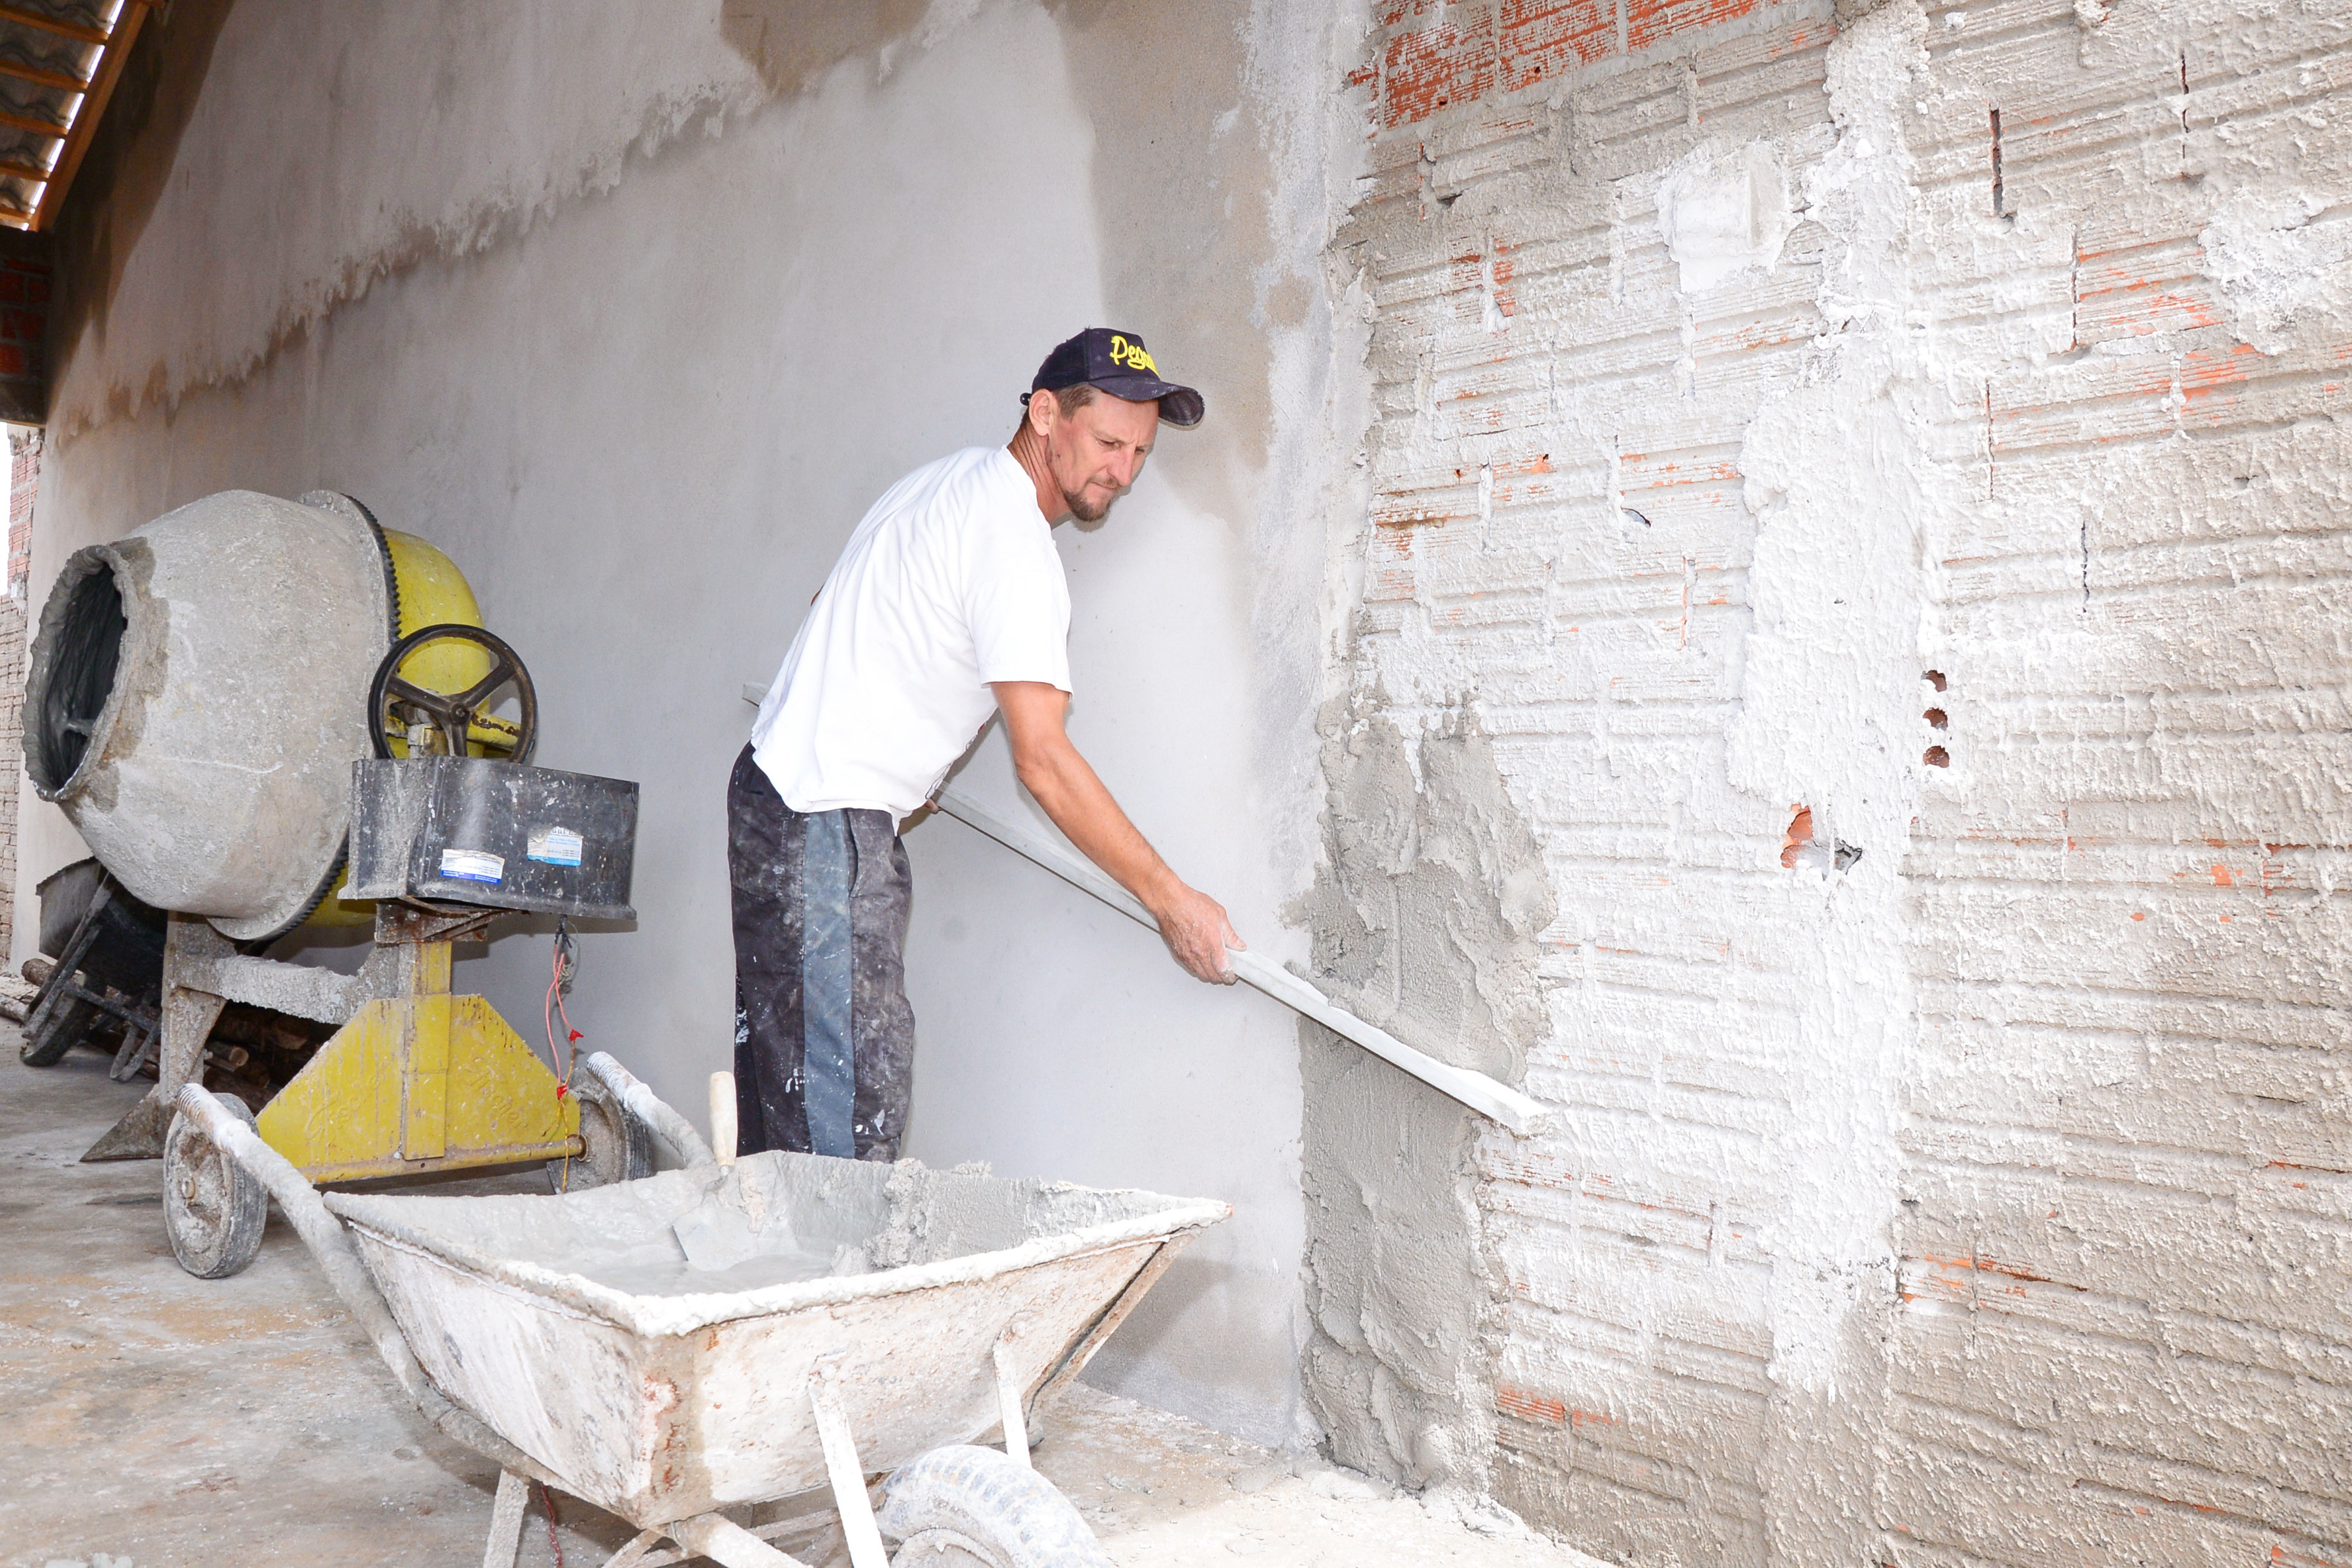 Destaque do mês de novembro foi a construção civil, que gerou quase 100 novos empregos em Apucarana - Foto: Delair Garcia